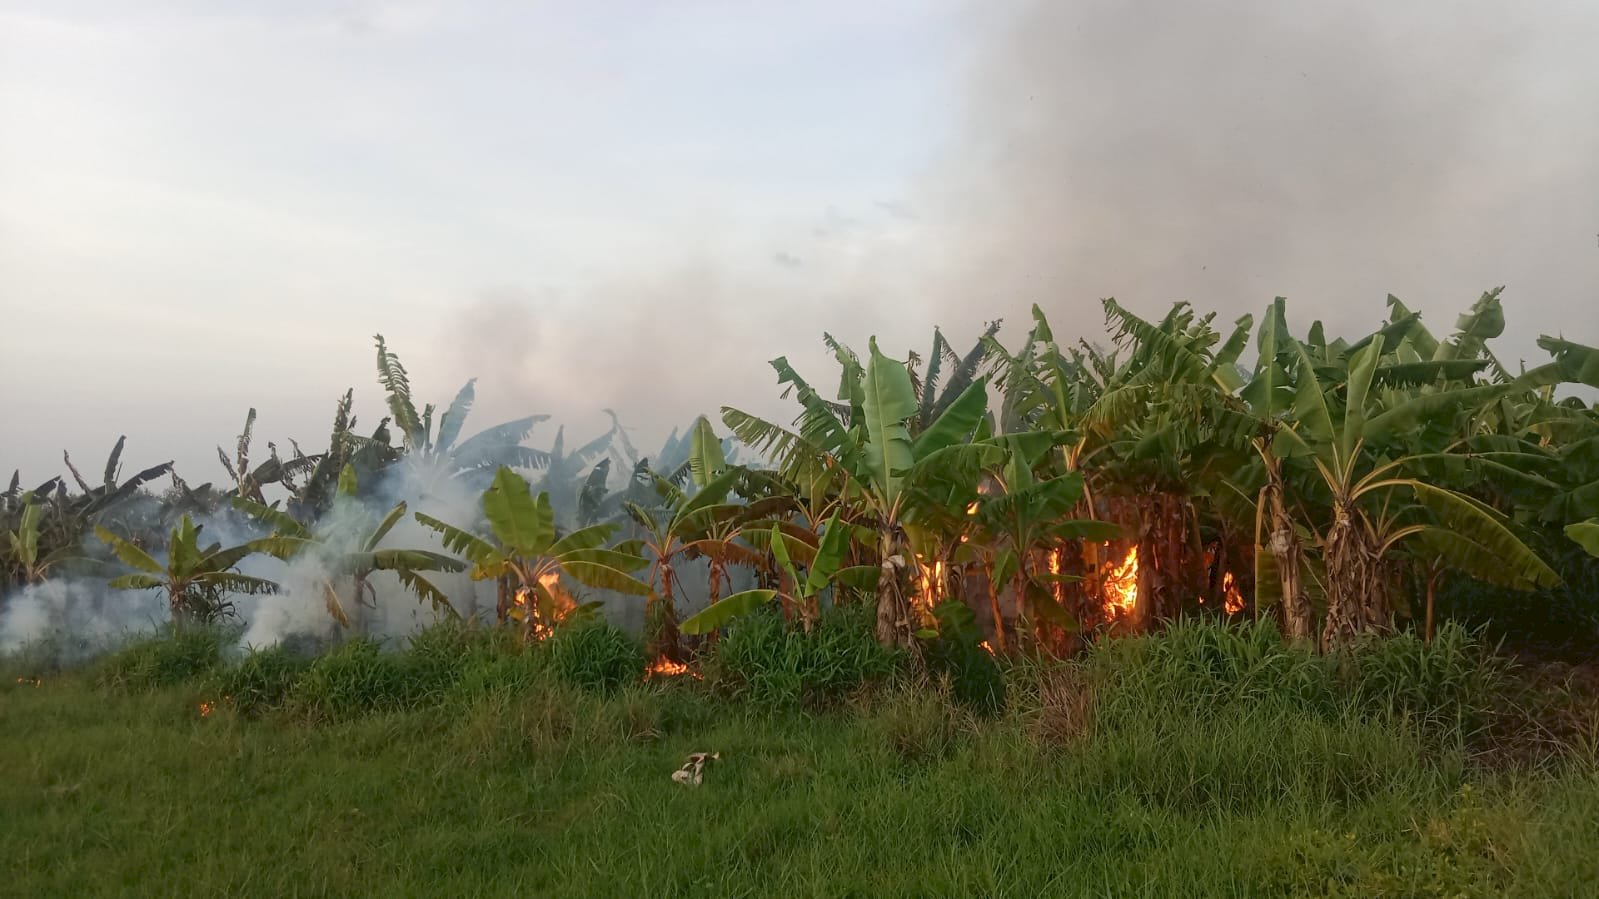 Kebakaran Lahan Pohon Pisang di Desa Gunting Kecamatan Wonosari, Akibat Puntung Rokok